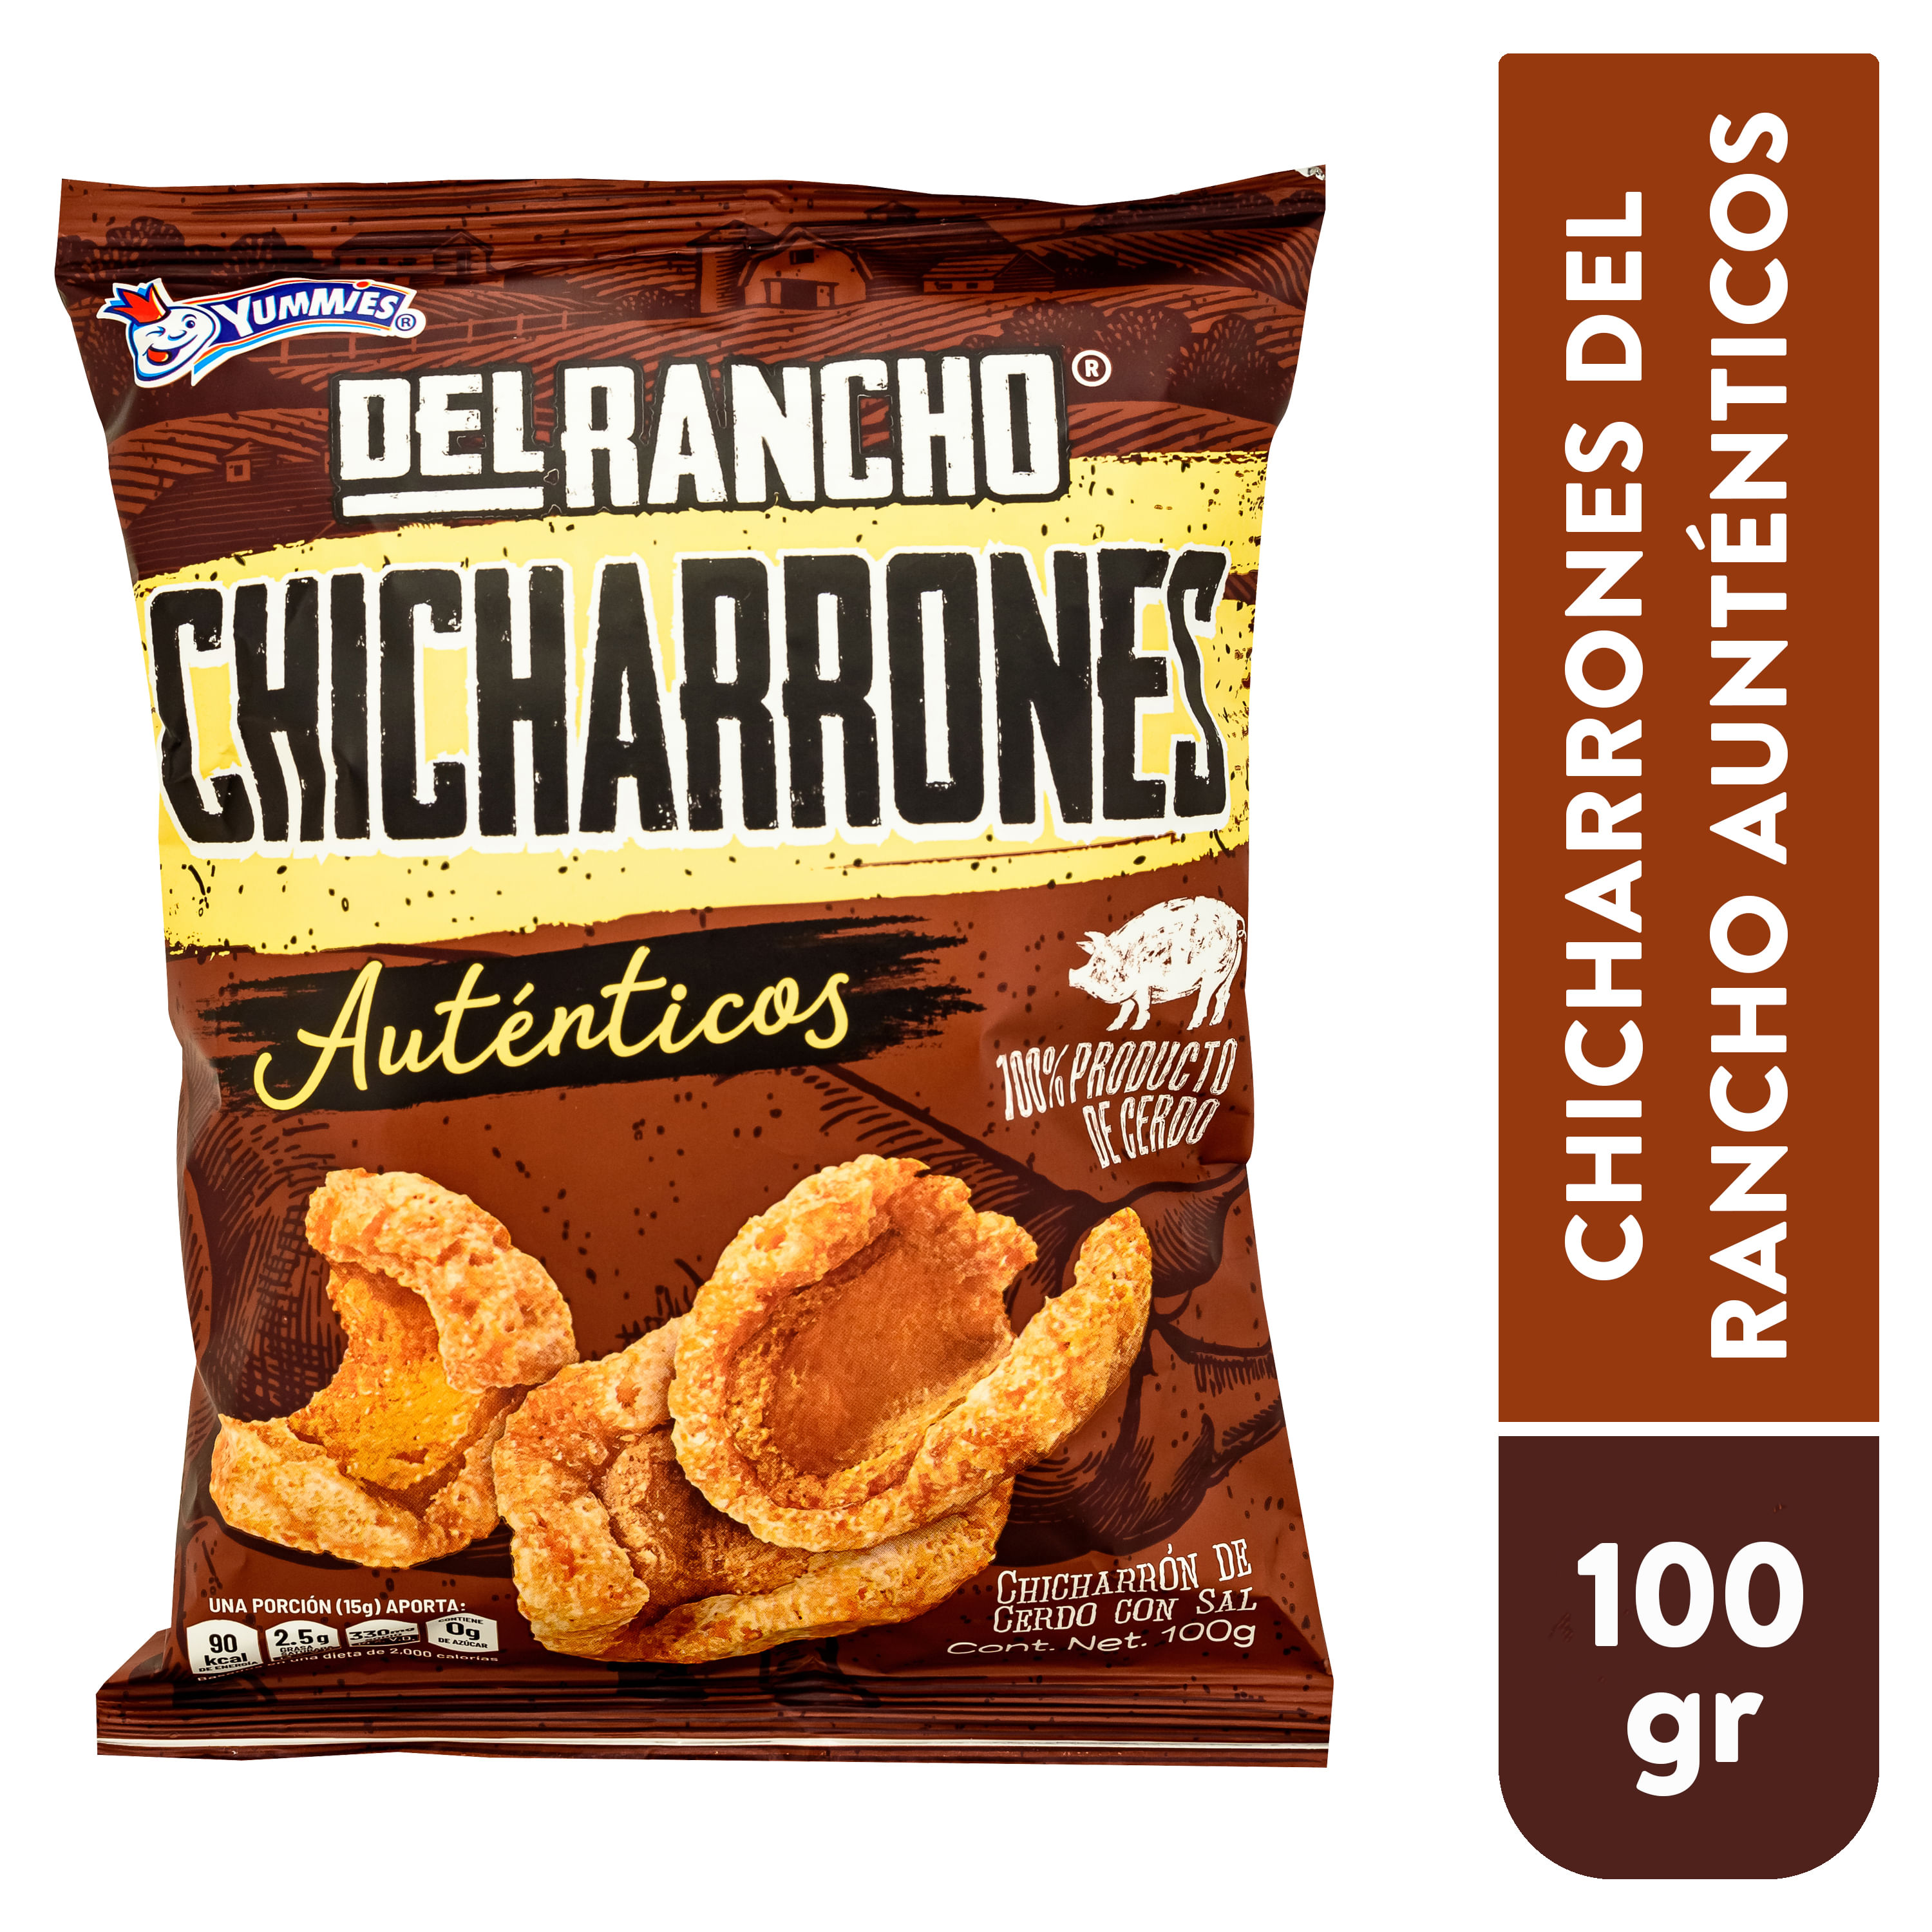 Chicharrones-Yummies-Del-Rancho-Auntenticos-100gr-1-4159